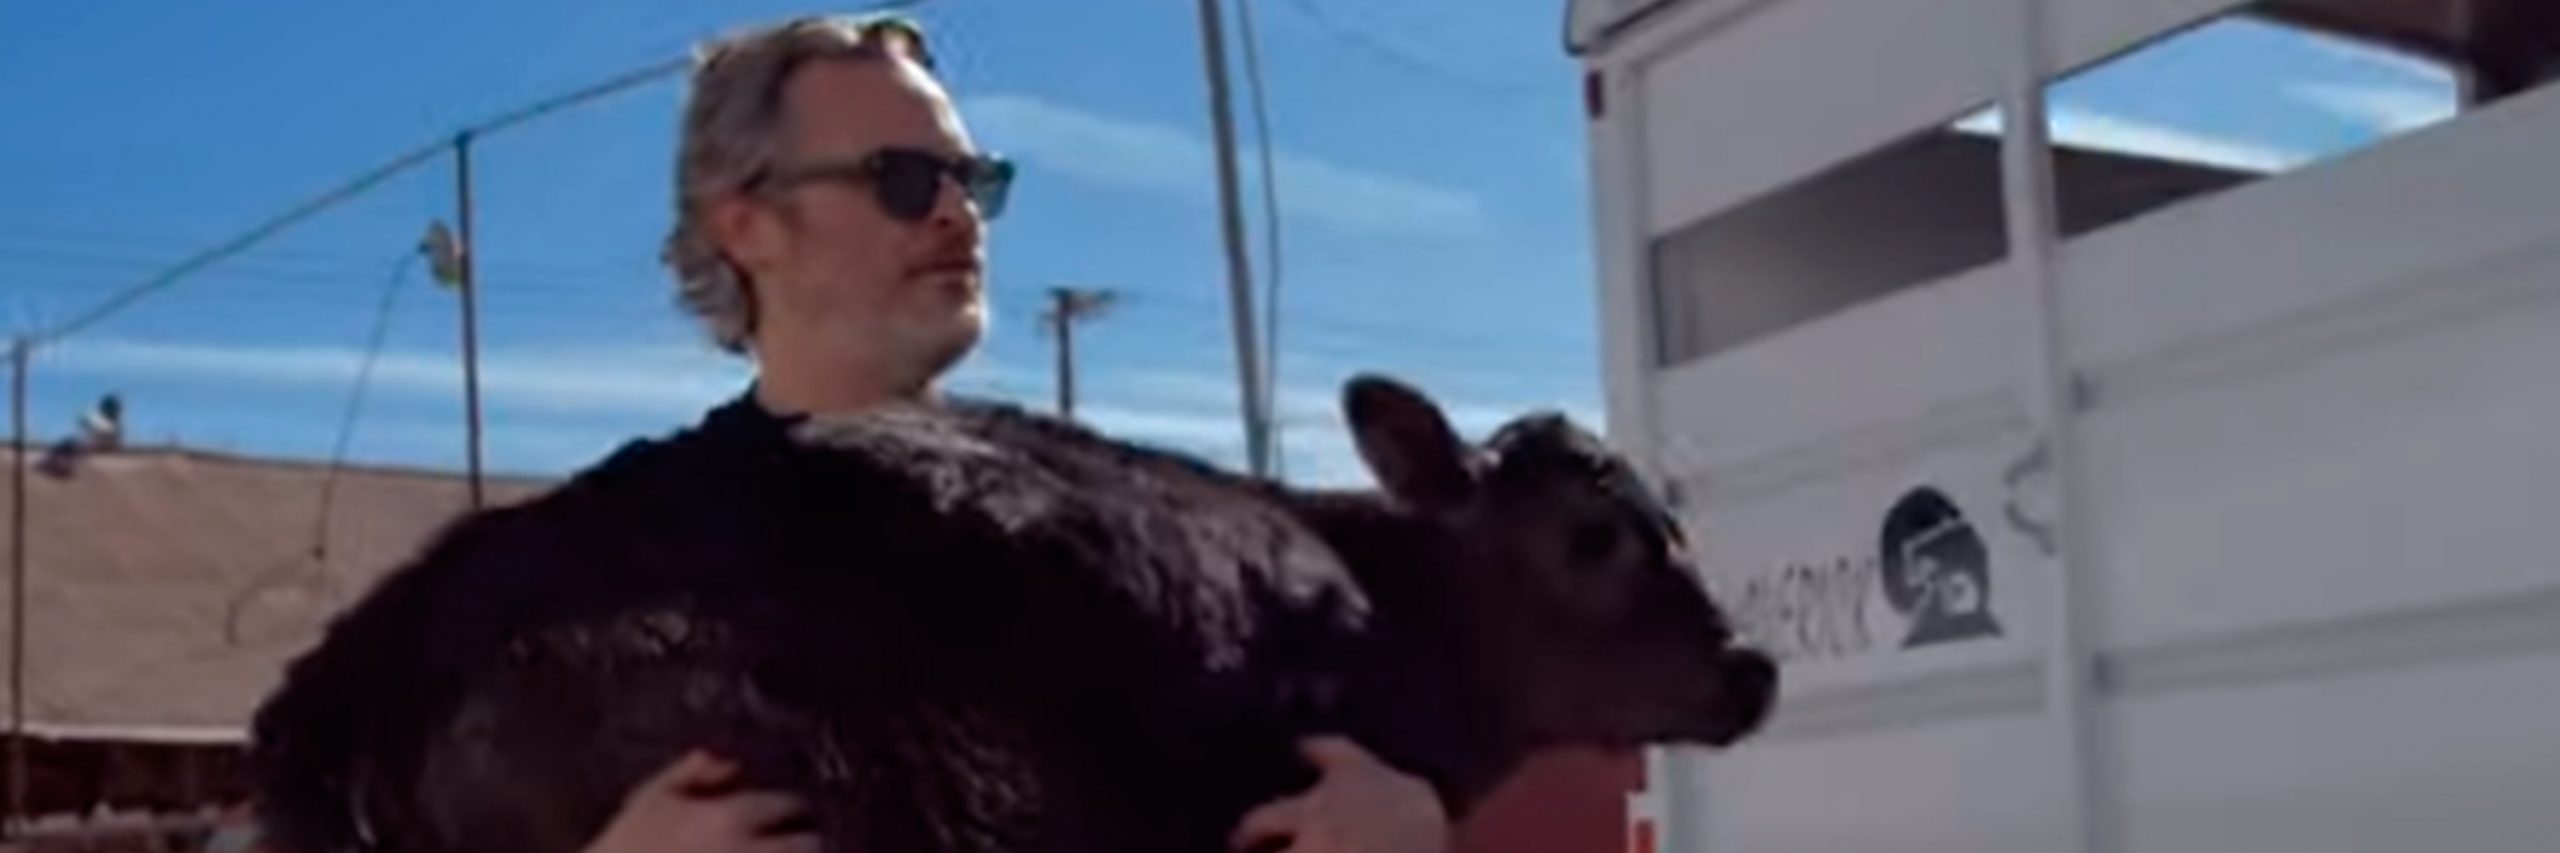 Joaquin Phoenix rescata vaca